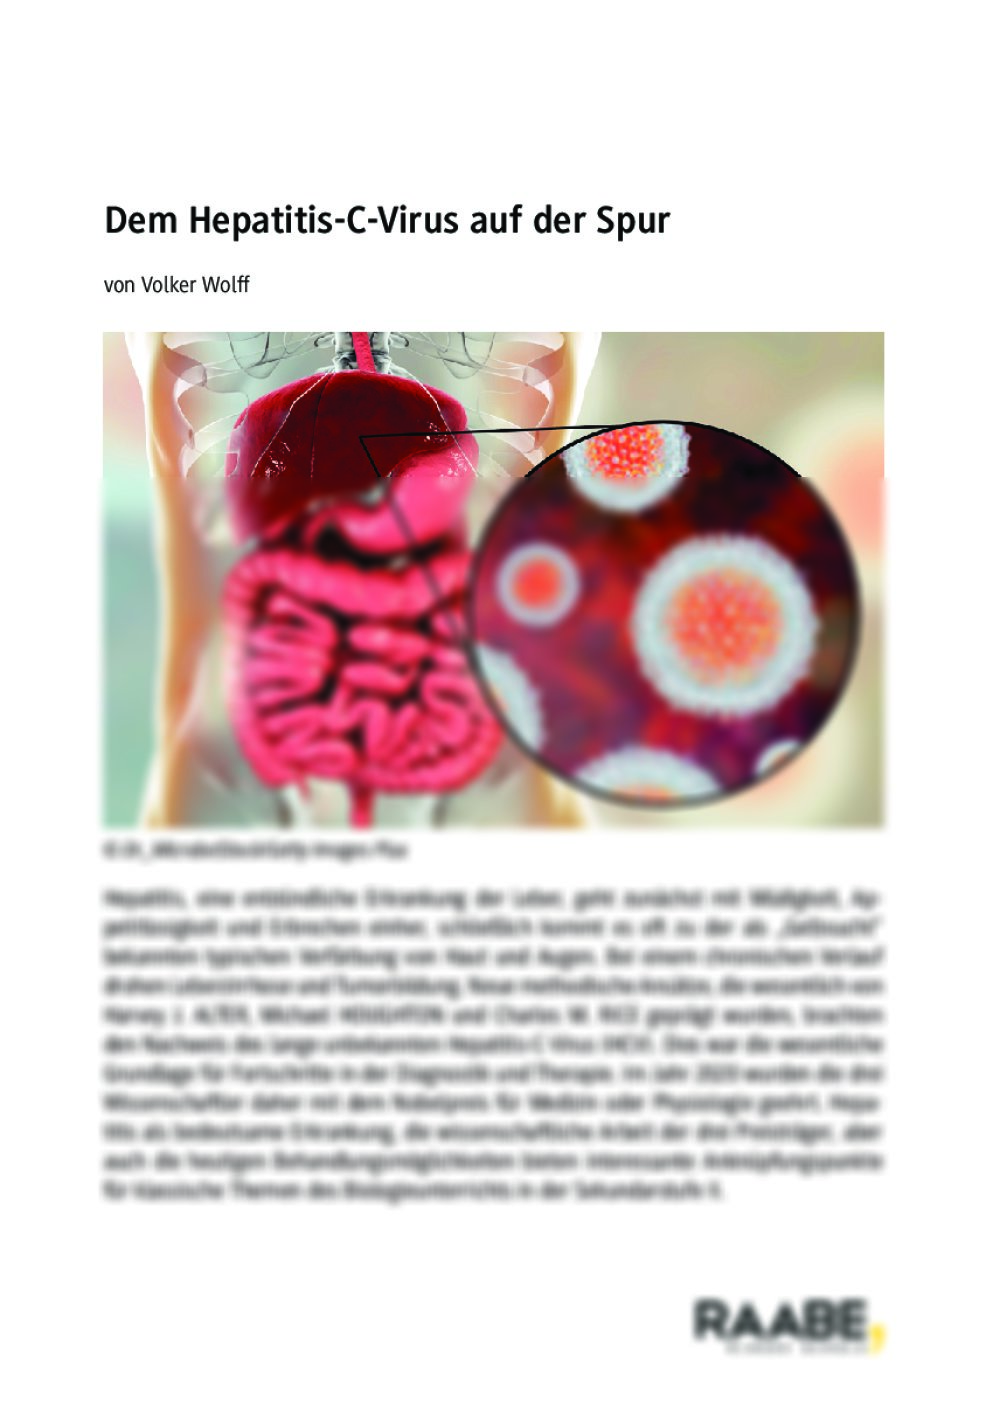 Dem Hepatitis-C-Virus auf der Spur - Seite 1